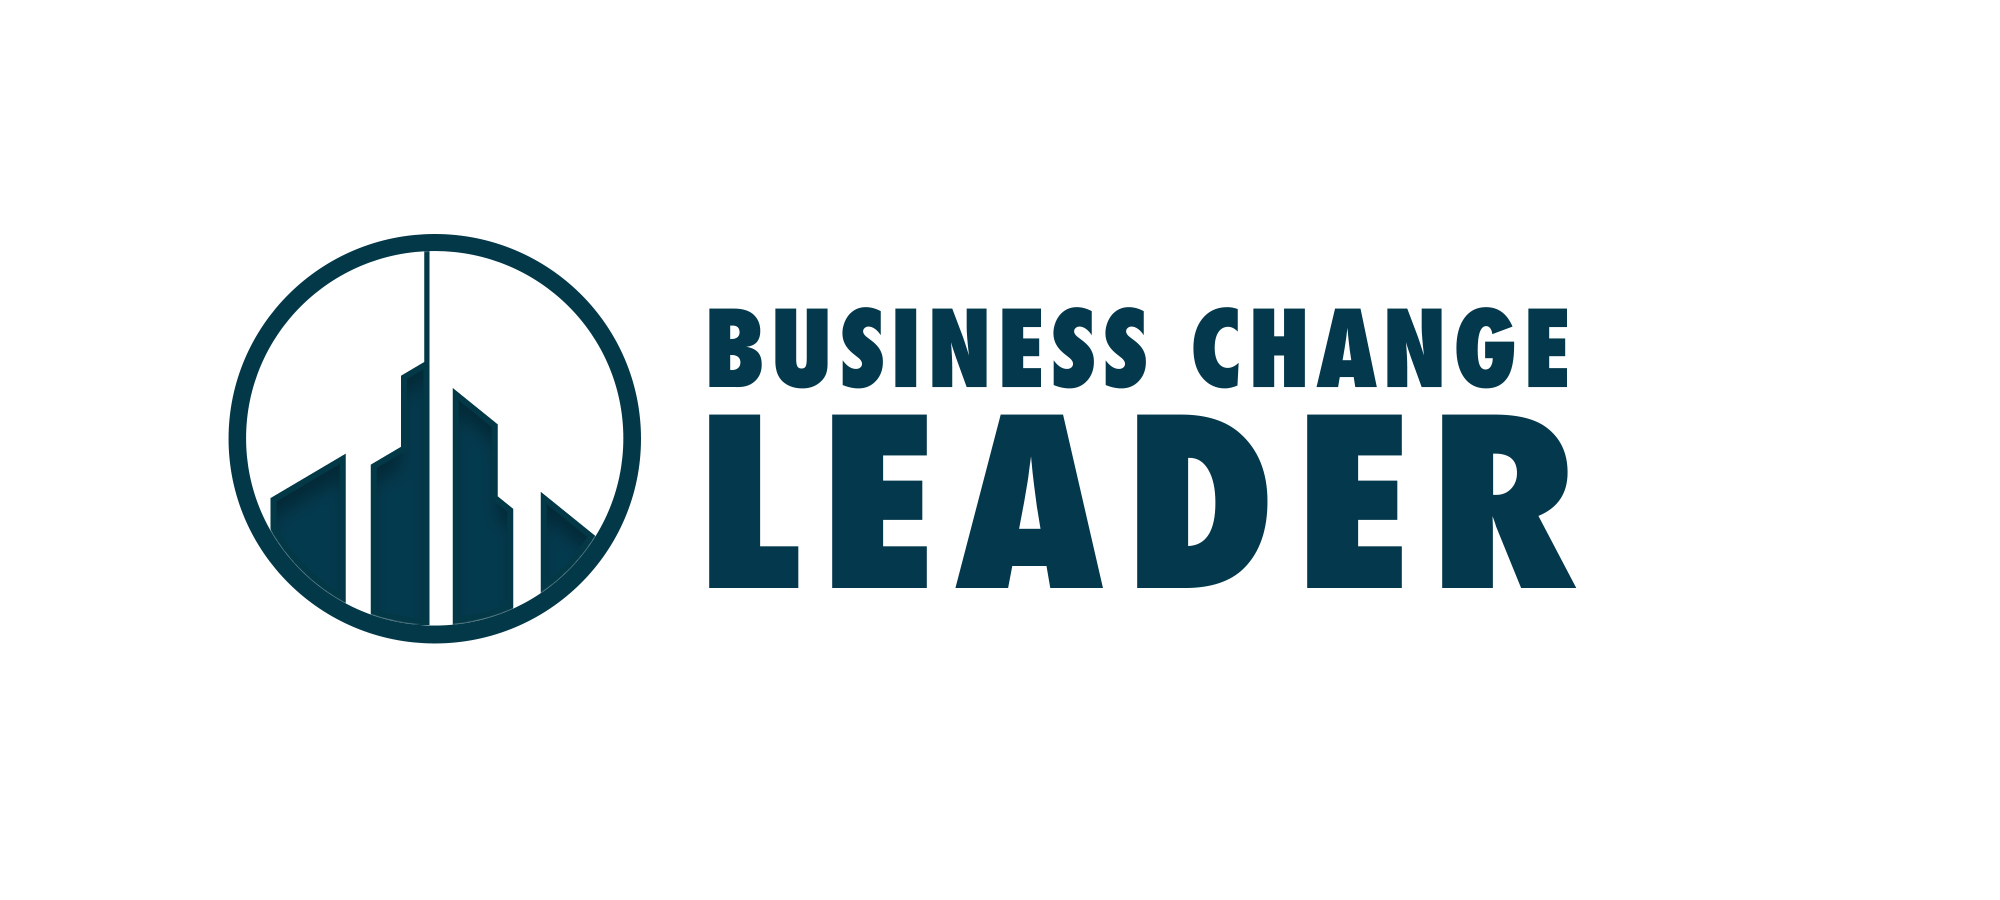 Business Change Leader